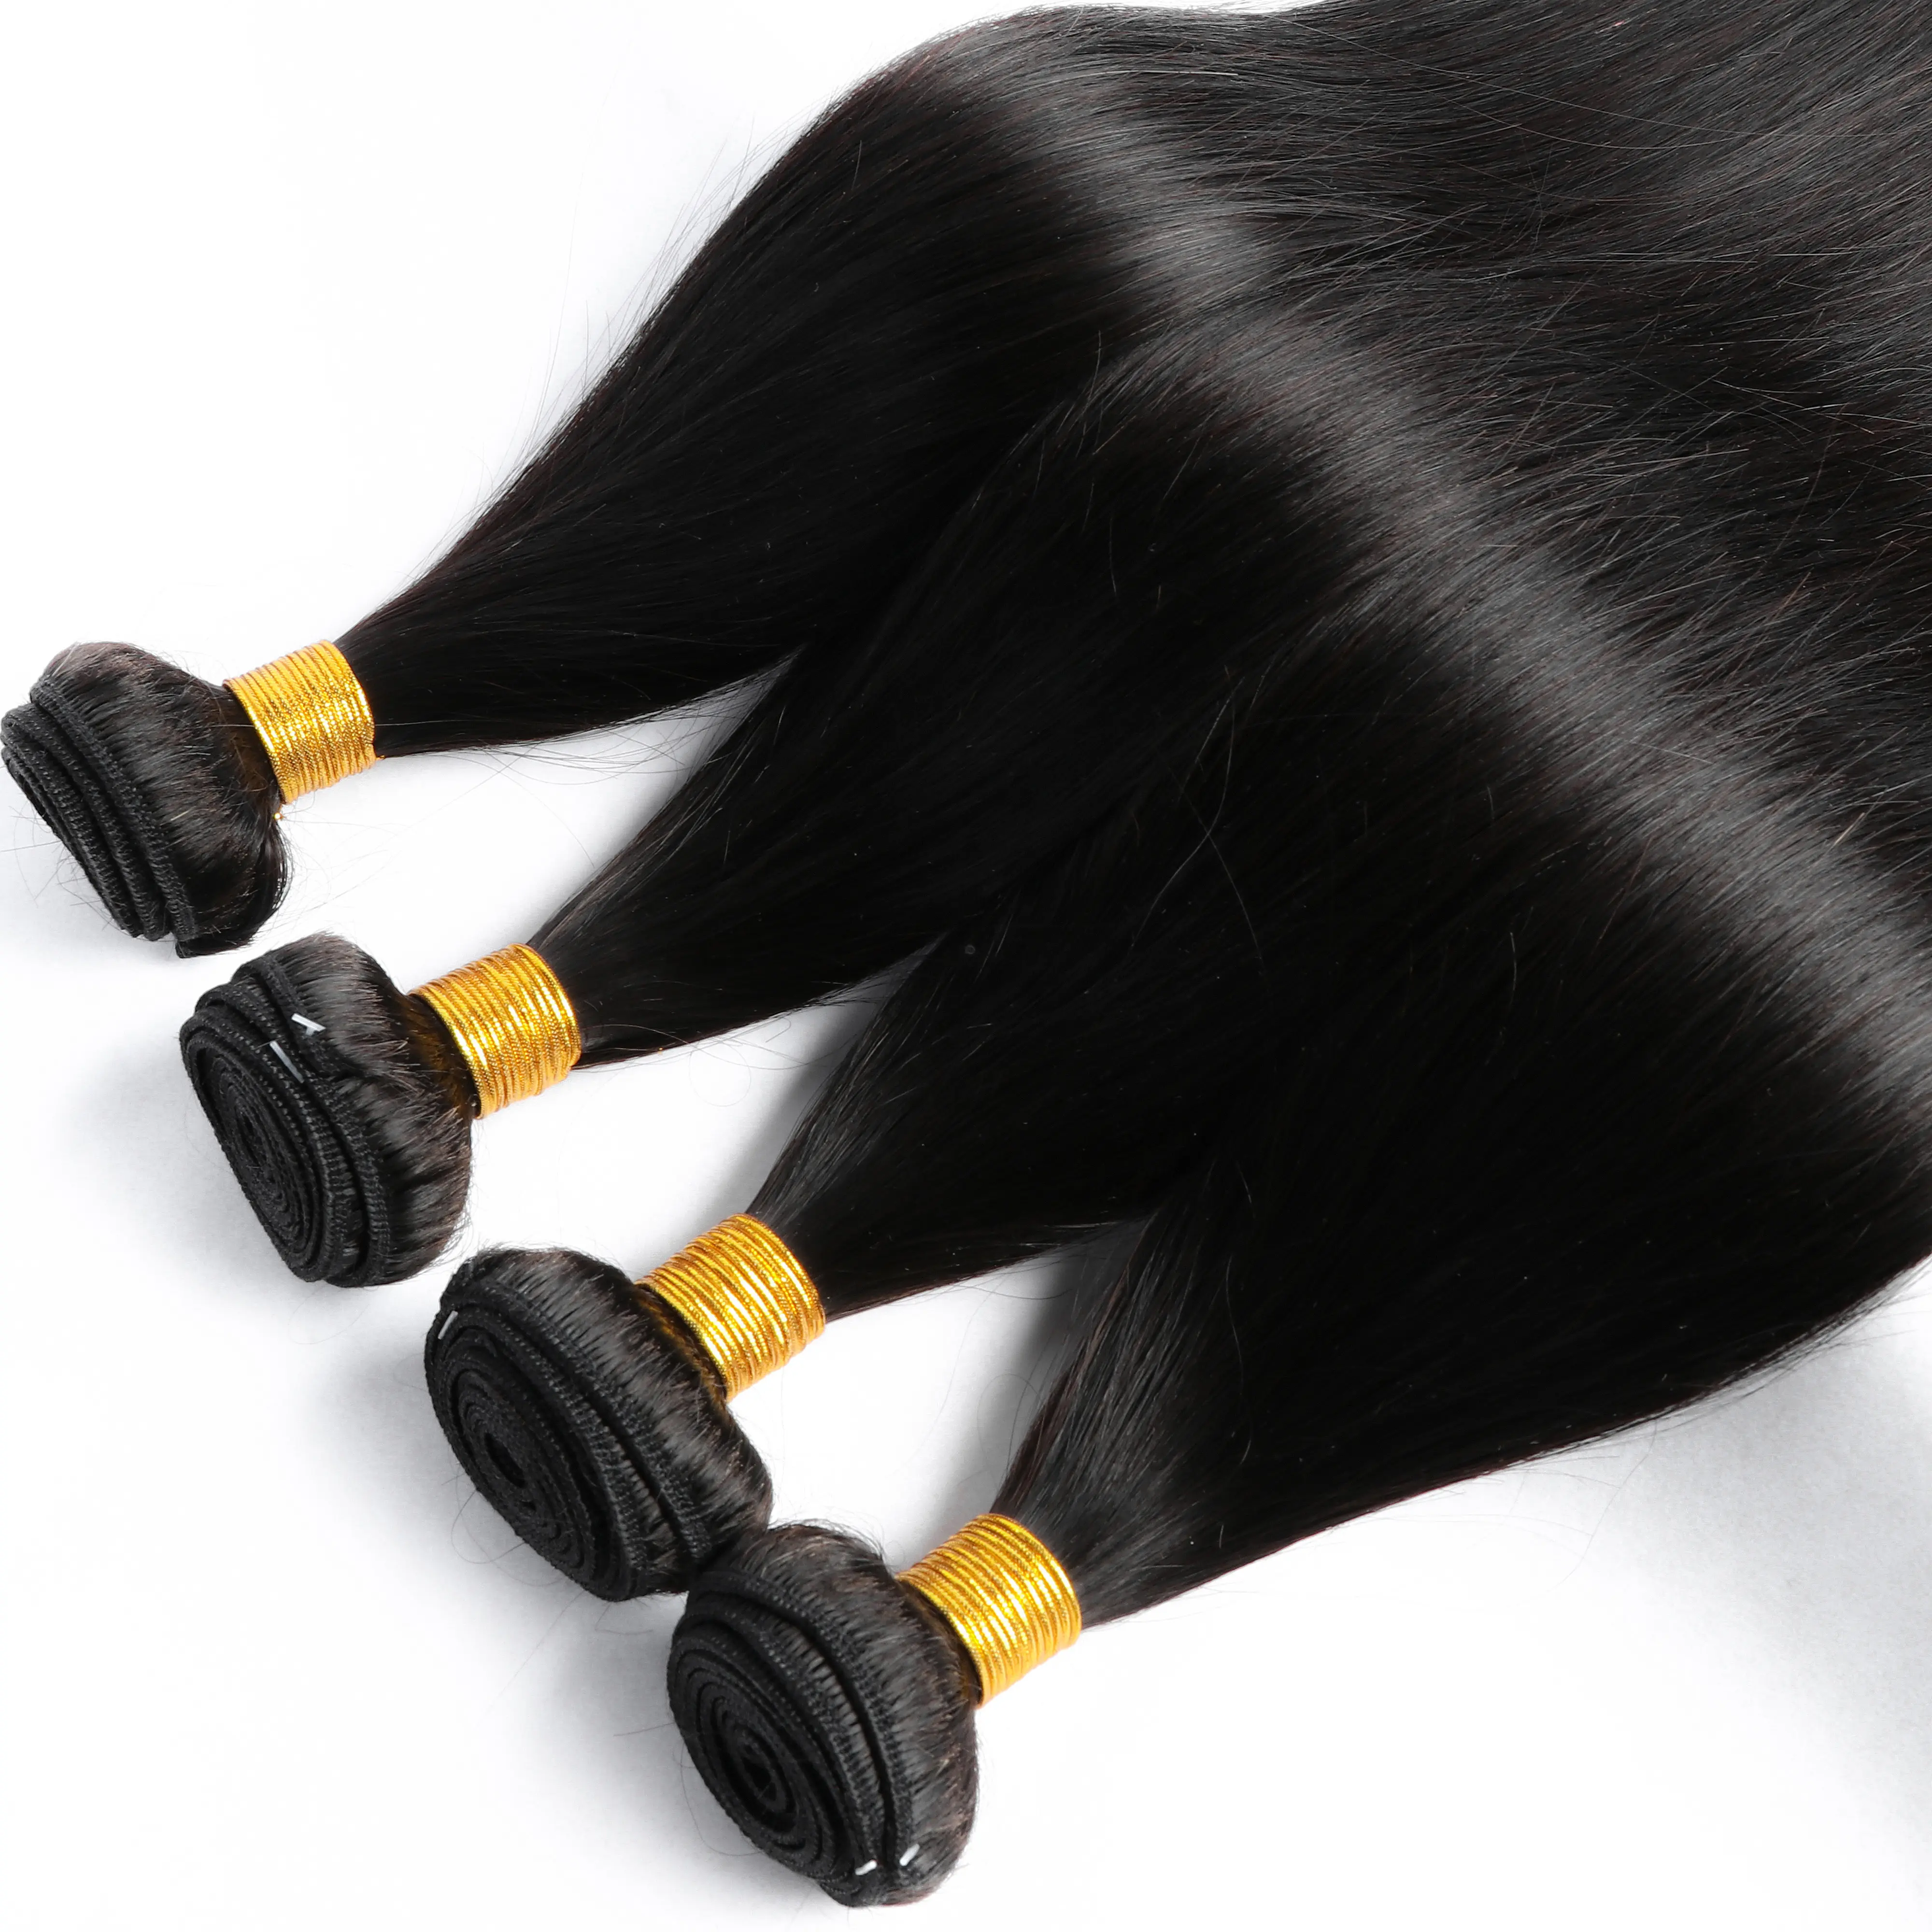 Demetleri insan saçı toptan 100g doğal renk 100% insan remy bakire hint saç demetleri hindistan satıcı